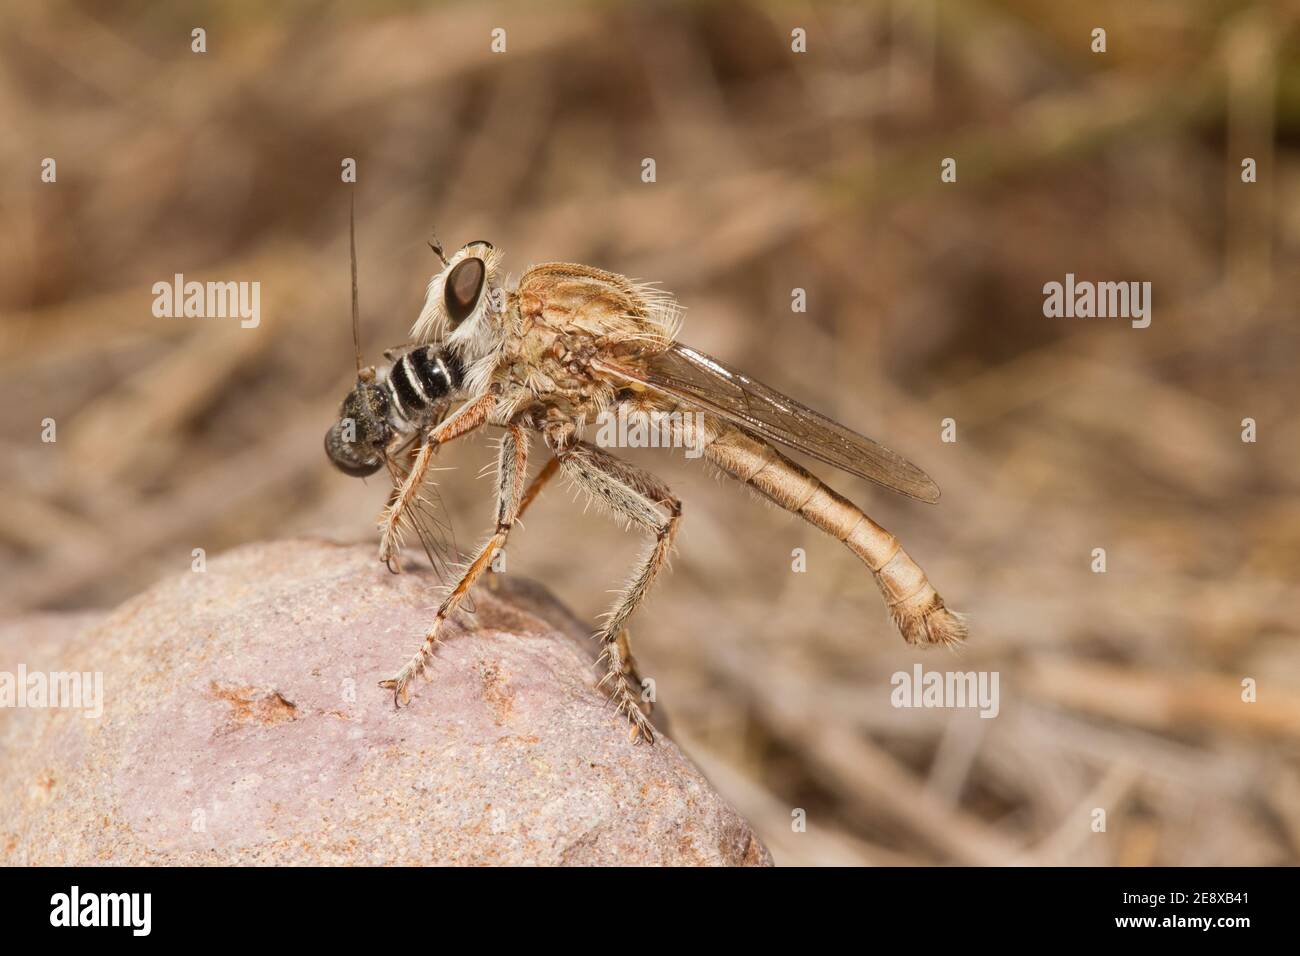 Robber Fly male, Proctacanthella exquisita, Asilidae. Feeding on Beefly, Bombyliidae. Stock Photo